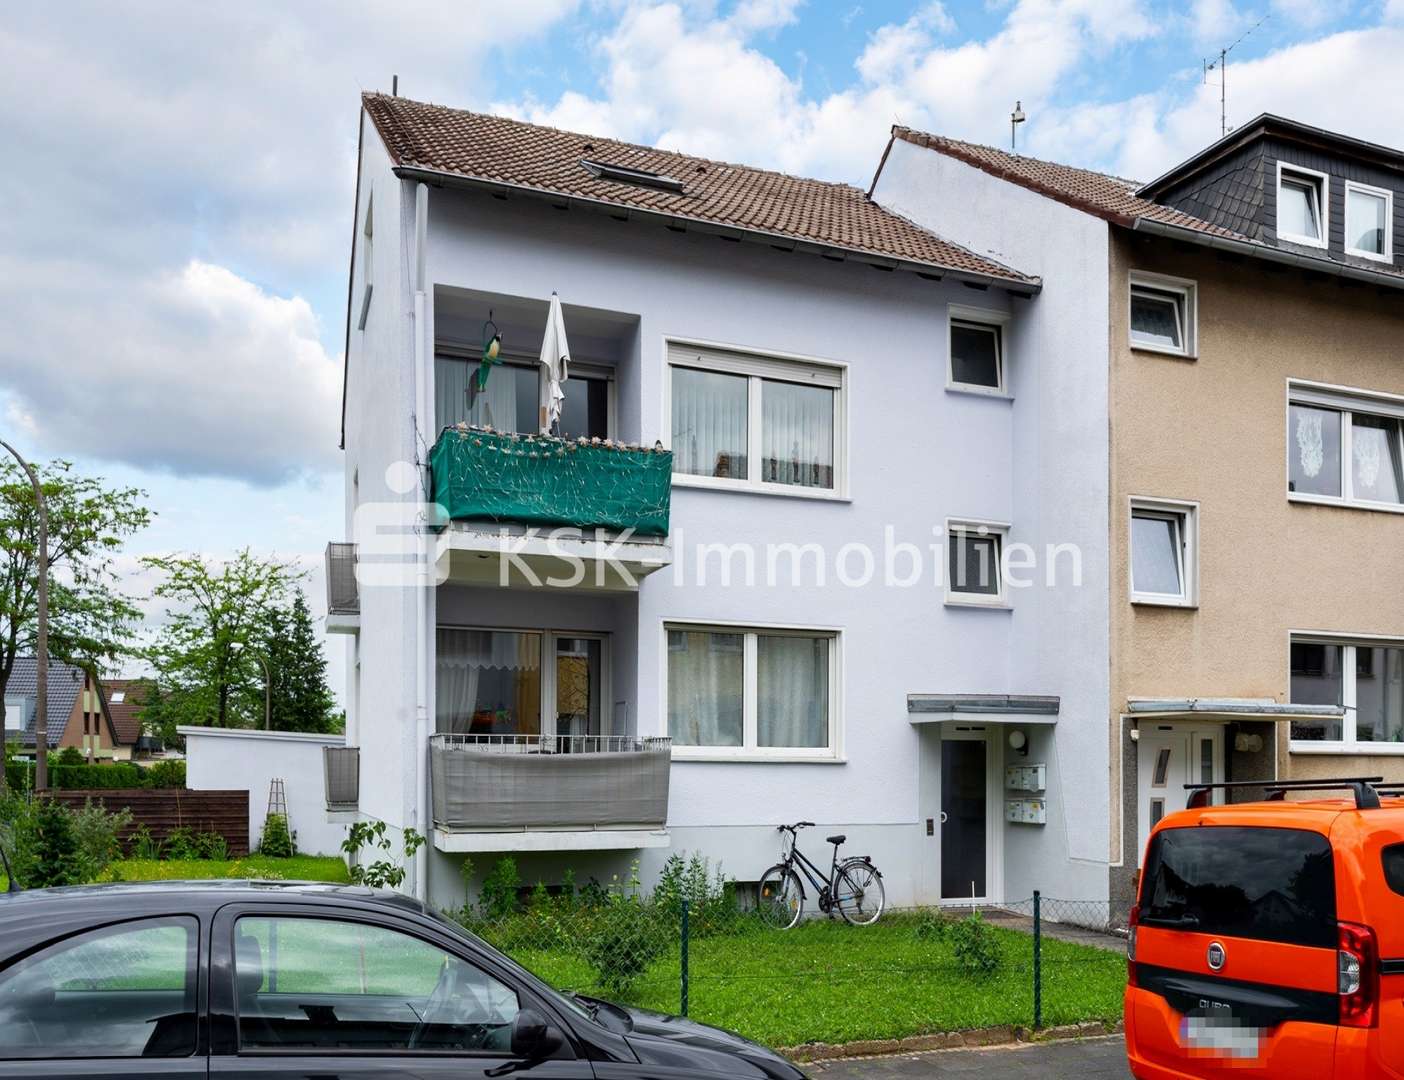 99798 Außenansicht - Mehrfamilienhaus in 53757 Sankt Augustin mit 147m² kaufen